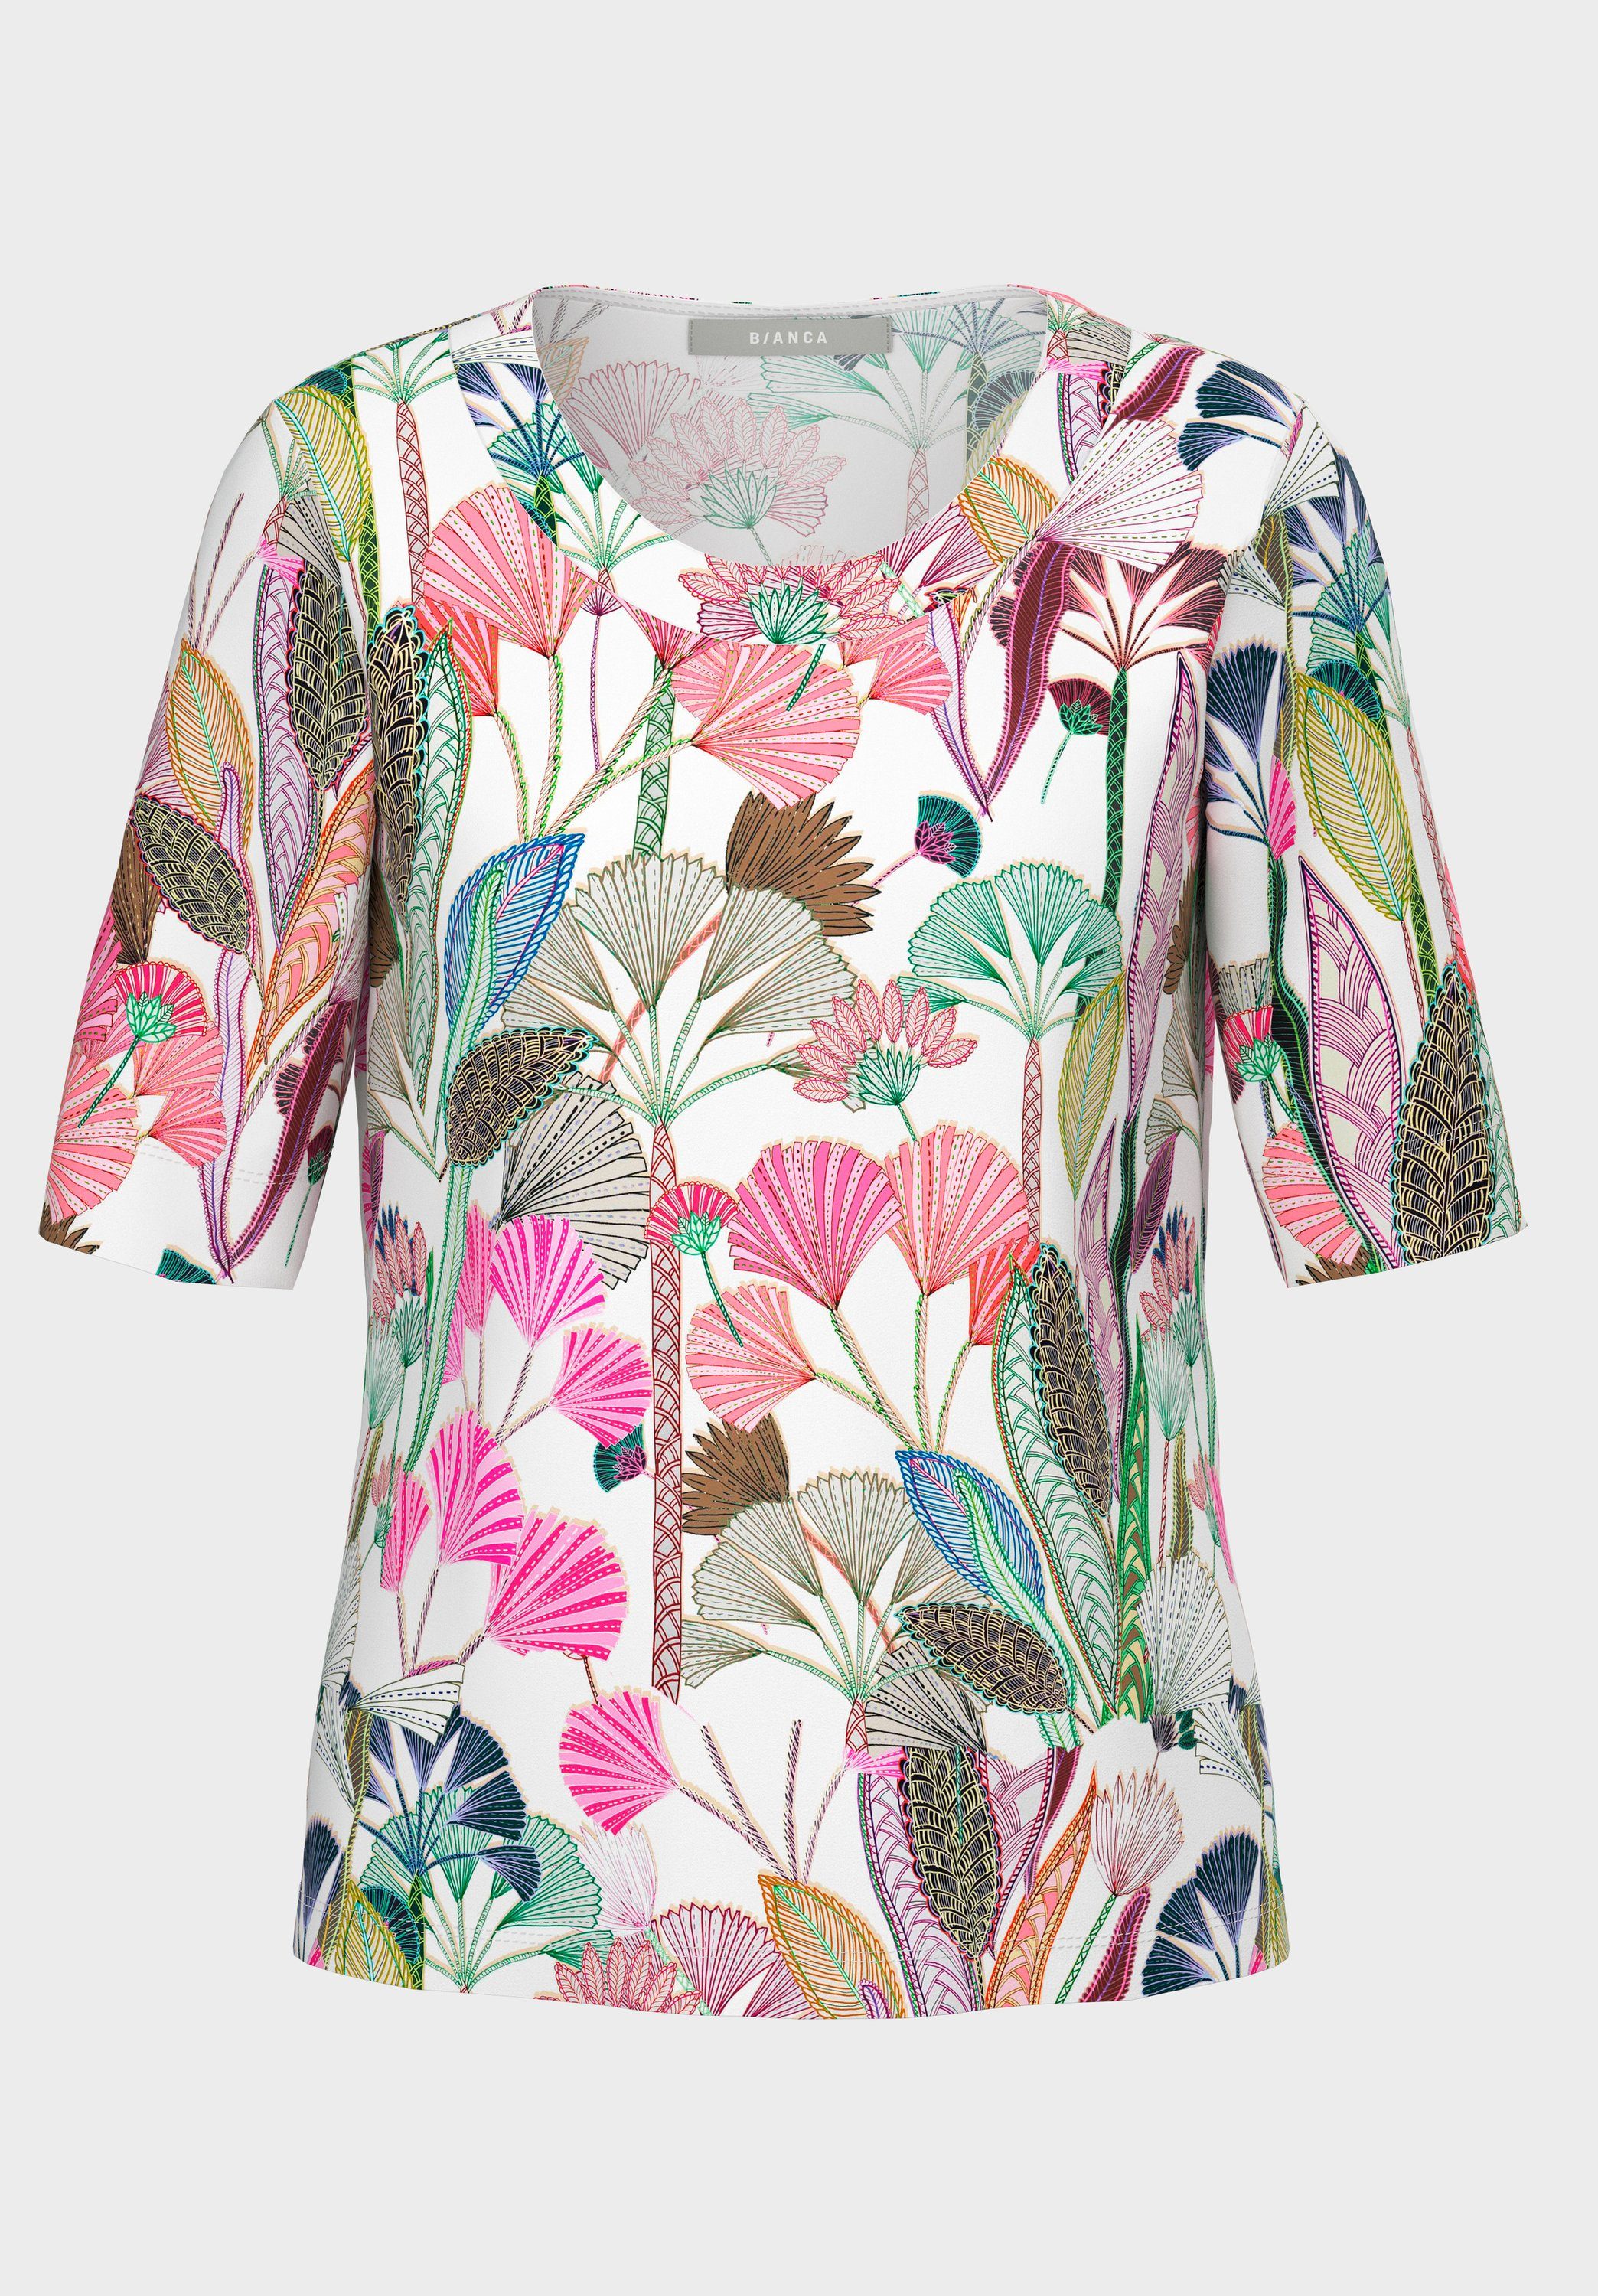 modernem, in angesagter bianca Druck mit Print-Shirt floralen DINIA Farbe